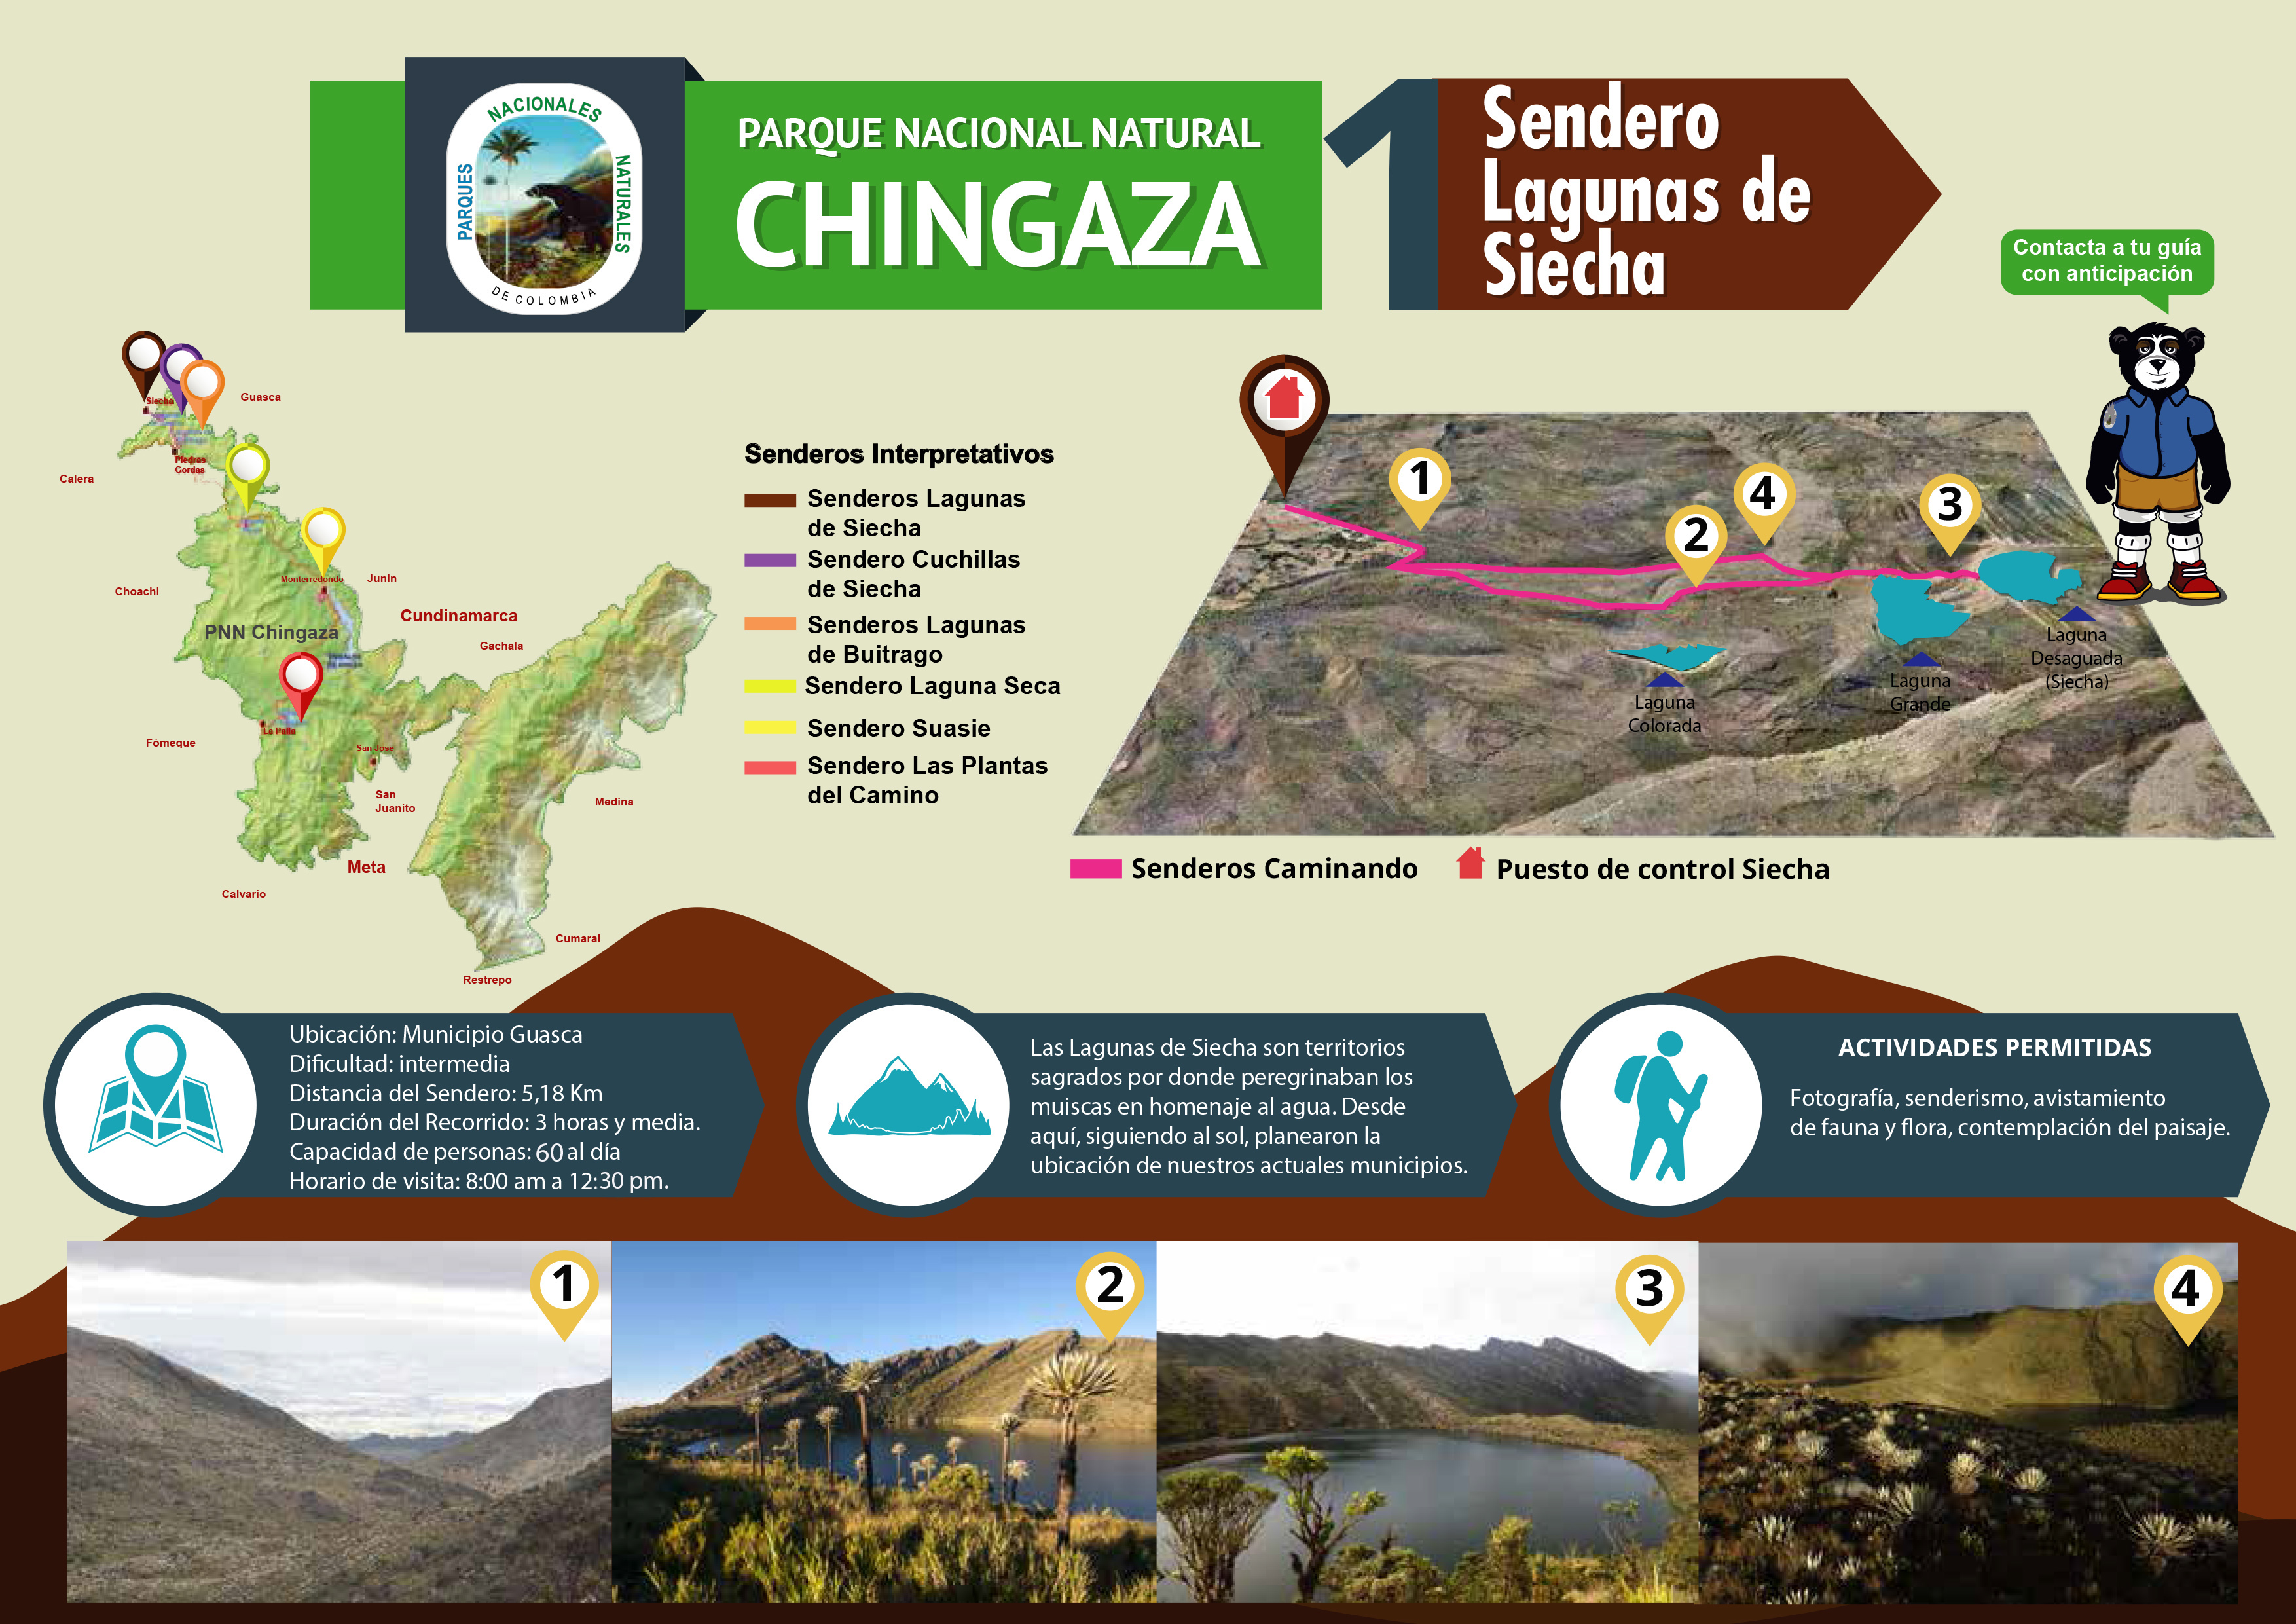 Trekking en Parque Nacional Chingaza, Páramo en Colombia - Foro América del Sur